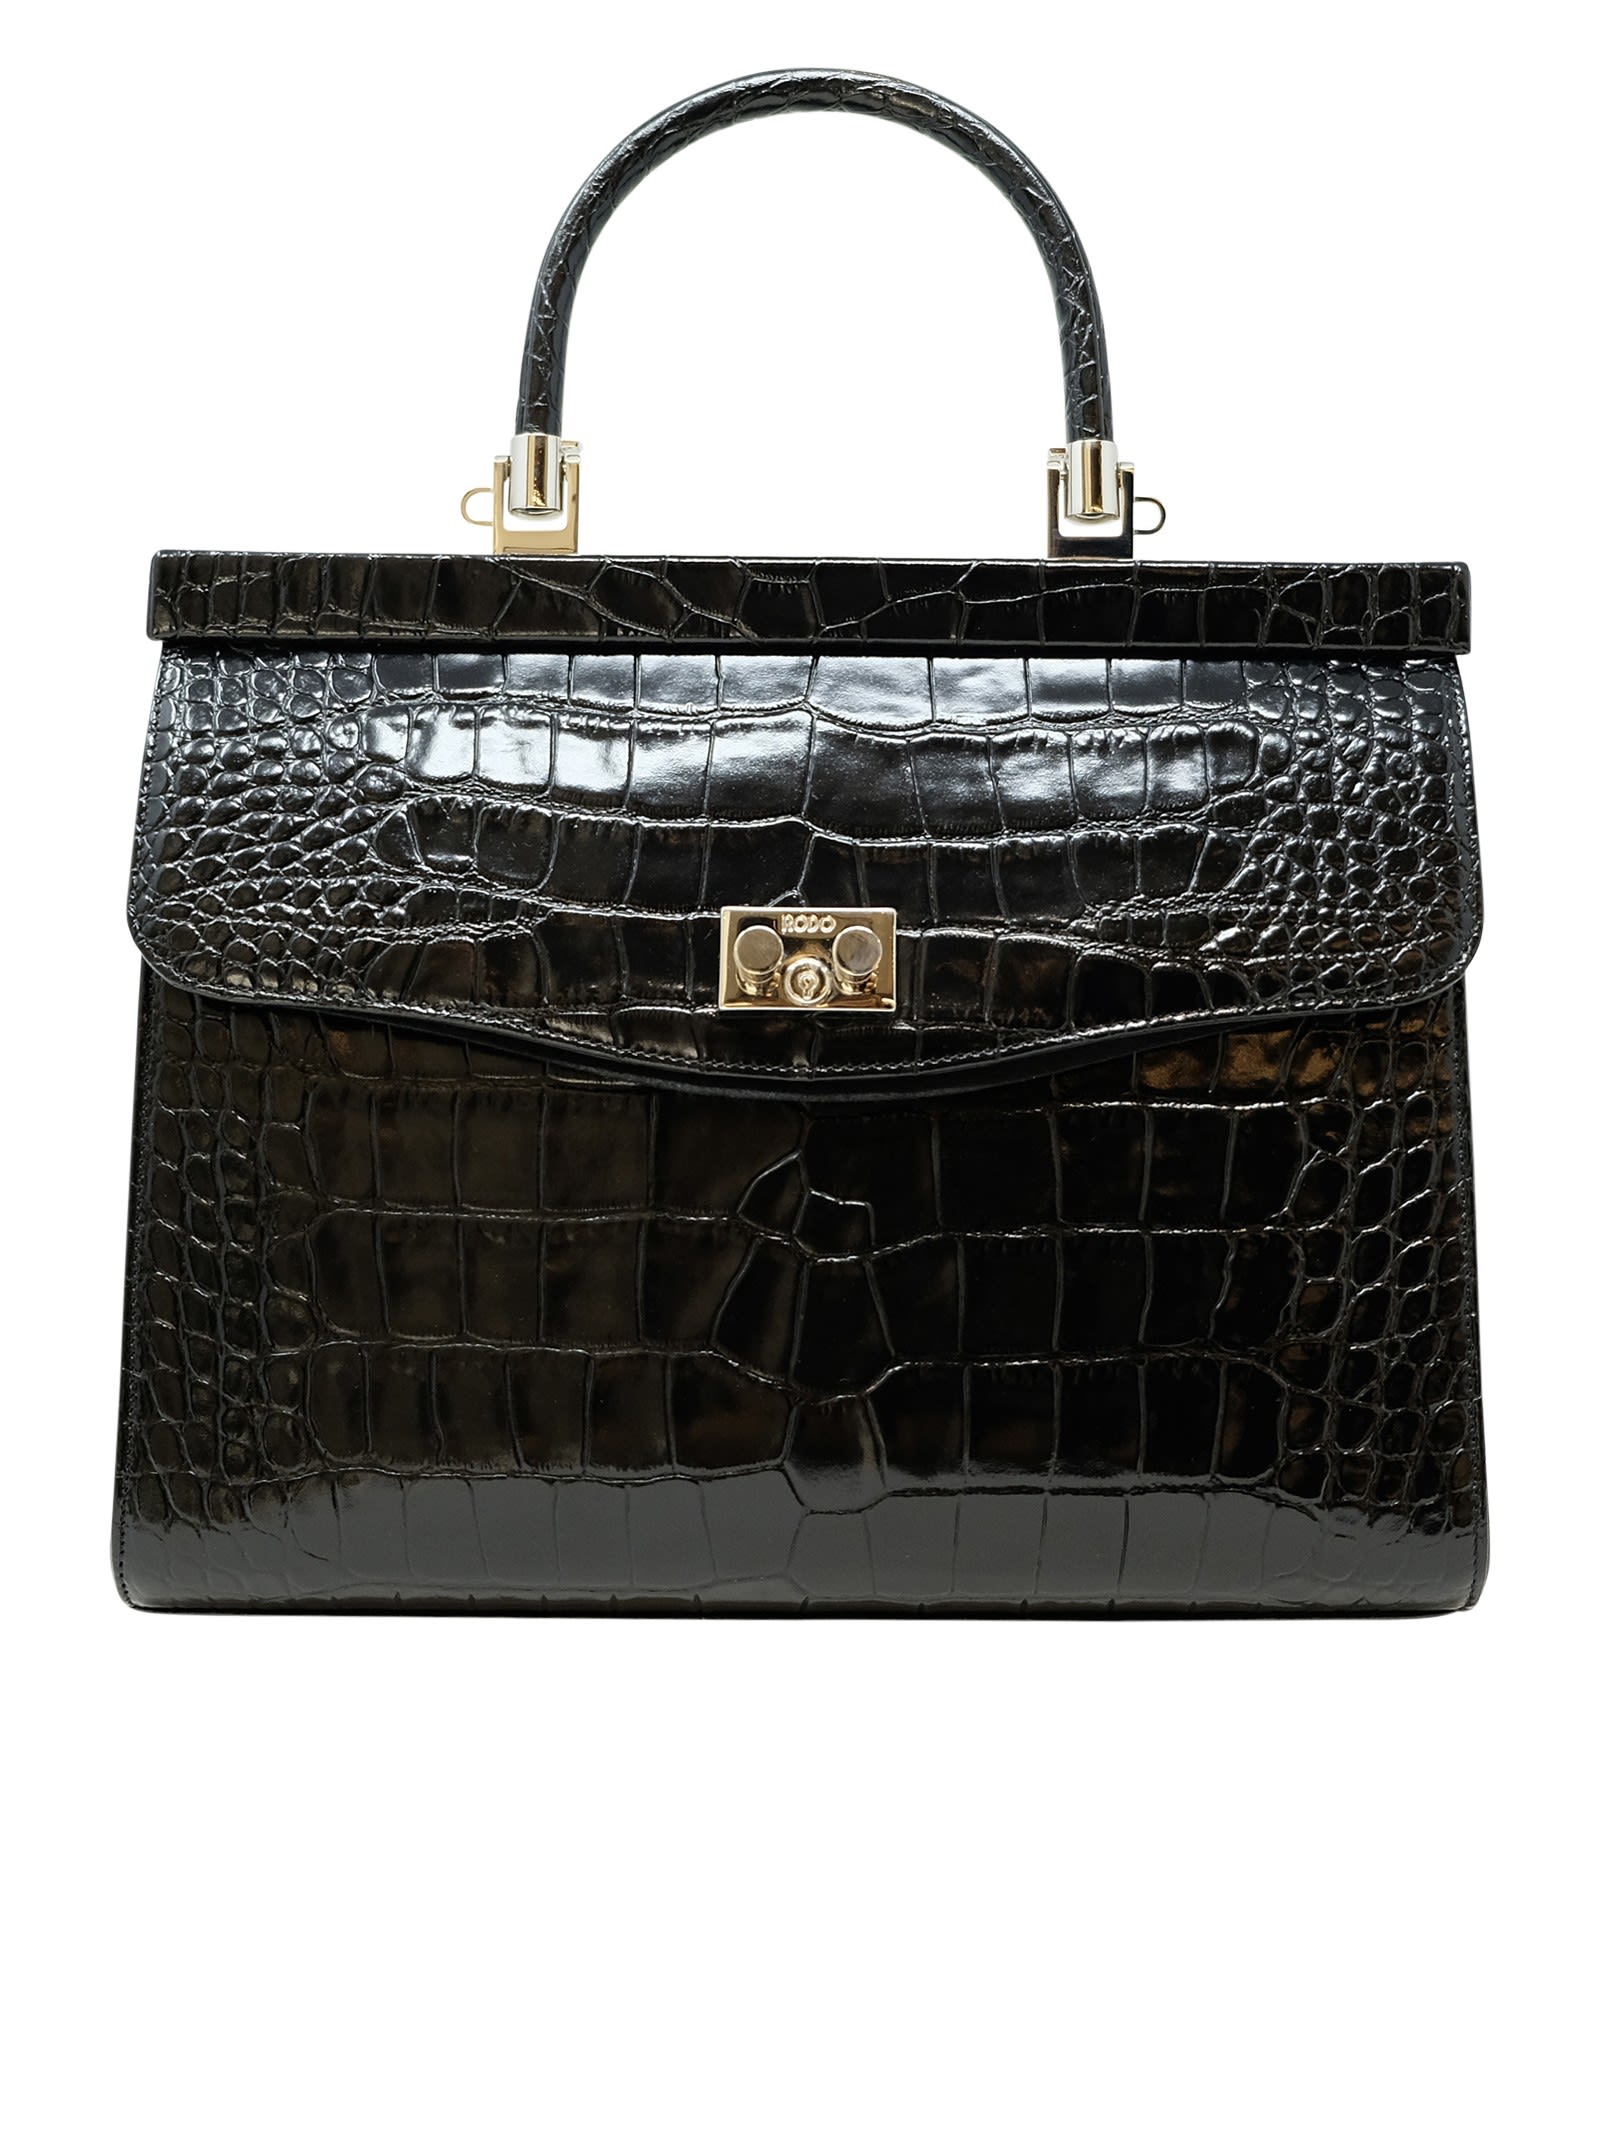 Shop Rodo Black Croco Leather Paris Handbag